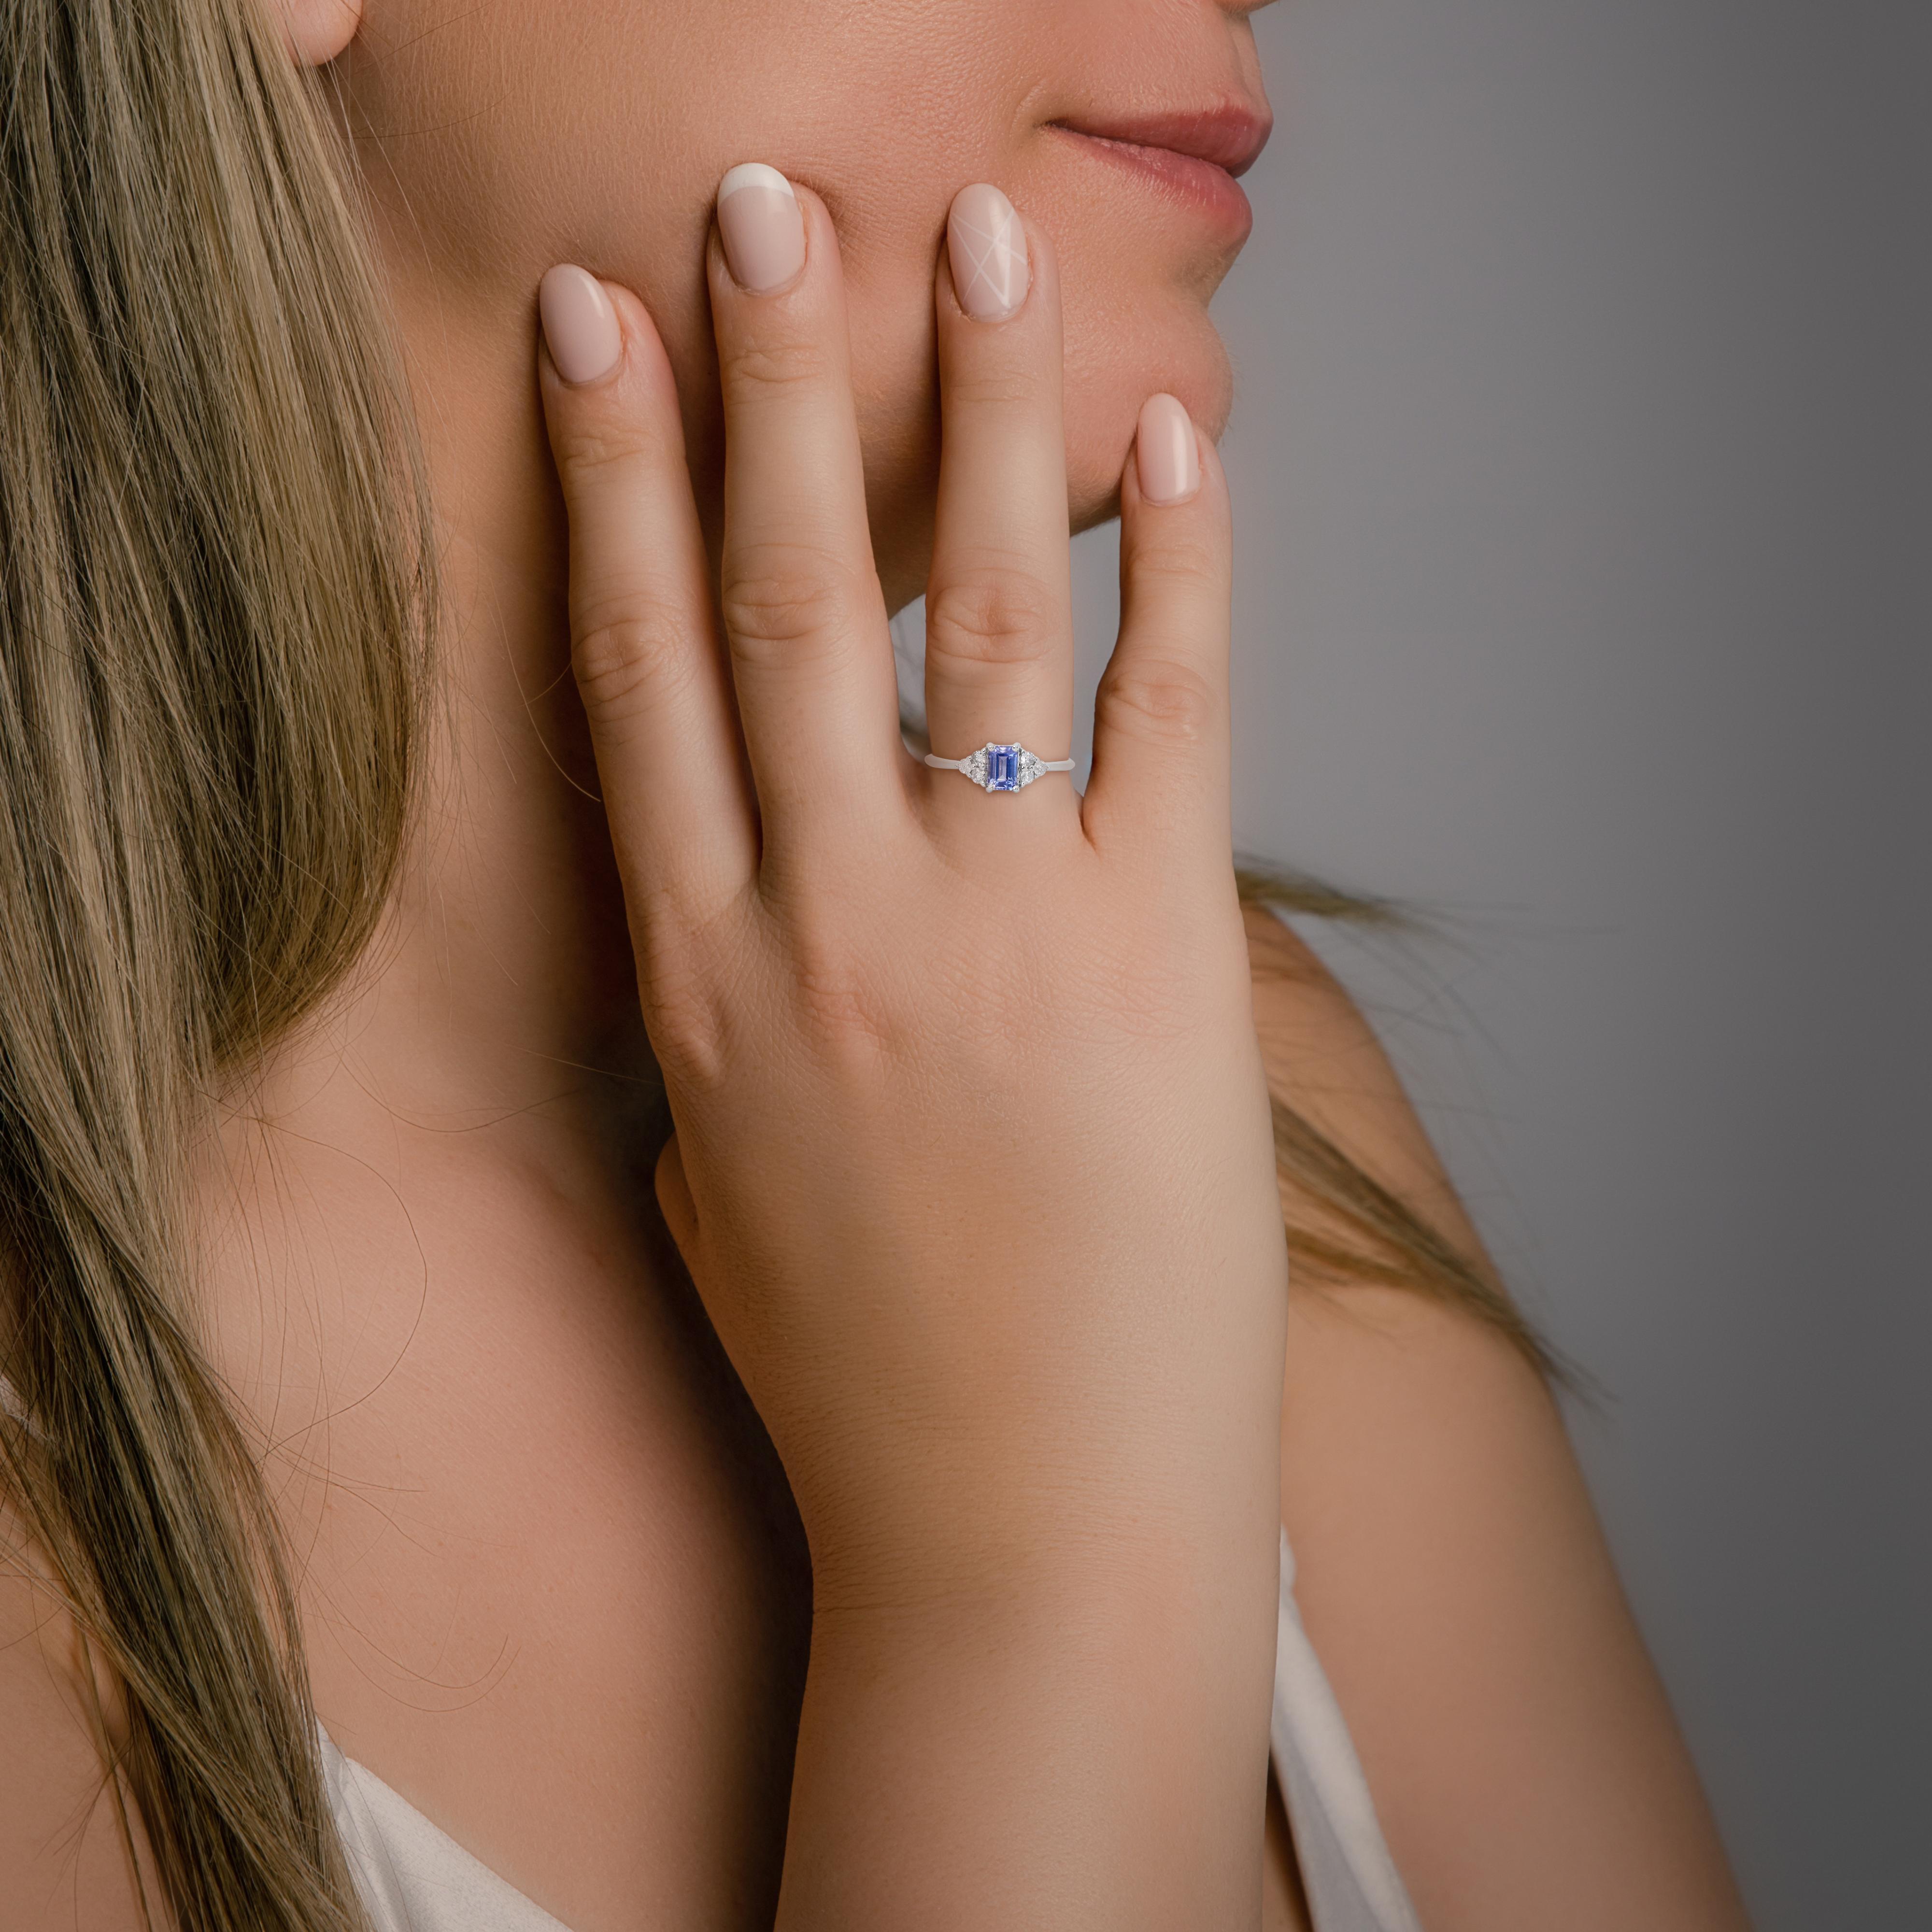 Anspruchsvolle 18k Weißgold Tansanit und Diamant Pave Ring w/1,08 ct - IGI zertifiziert 

Unser Ring aus 18 Karat Weißgold mit Tansanit und Diamant ist ein wahres Meisterwerk, das Eleganz mit einem Hauch von Modernität verbindet. In seinem Zentrum